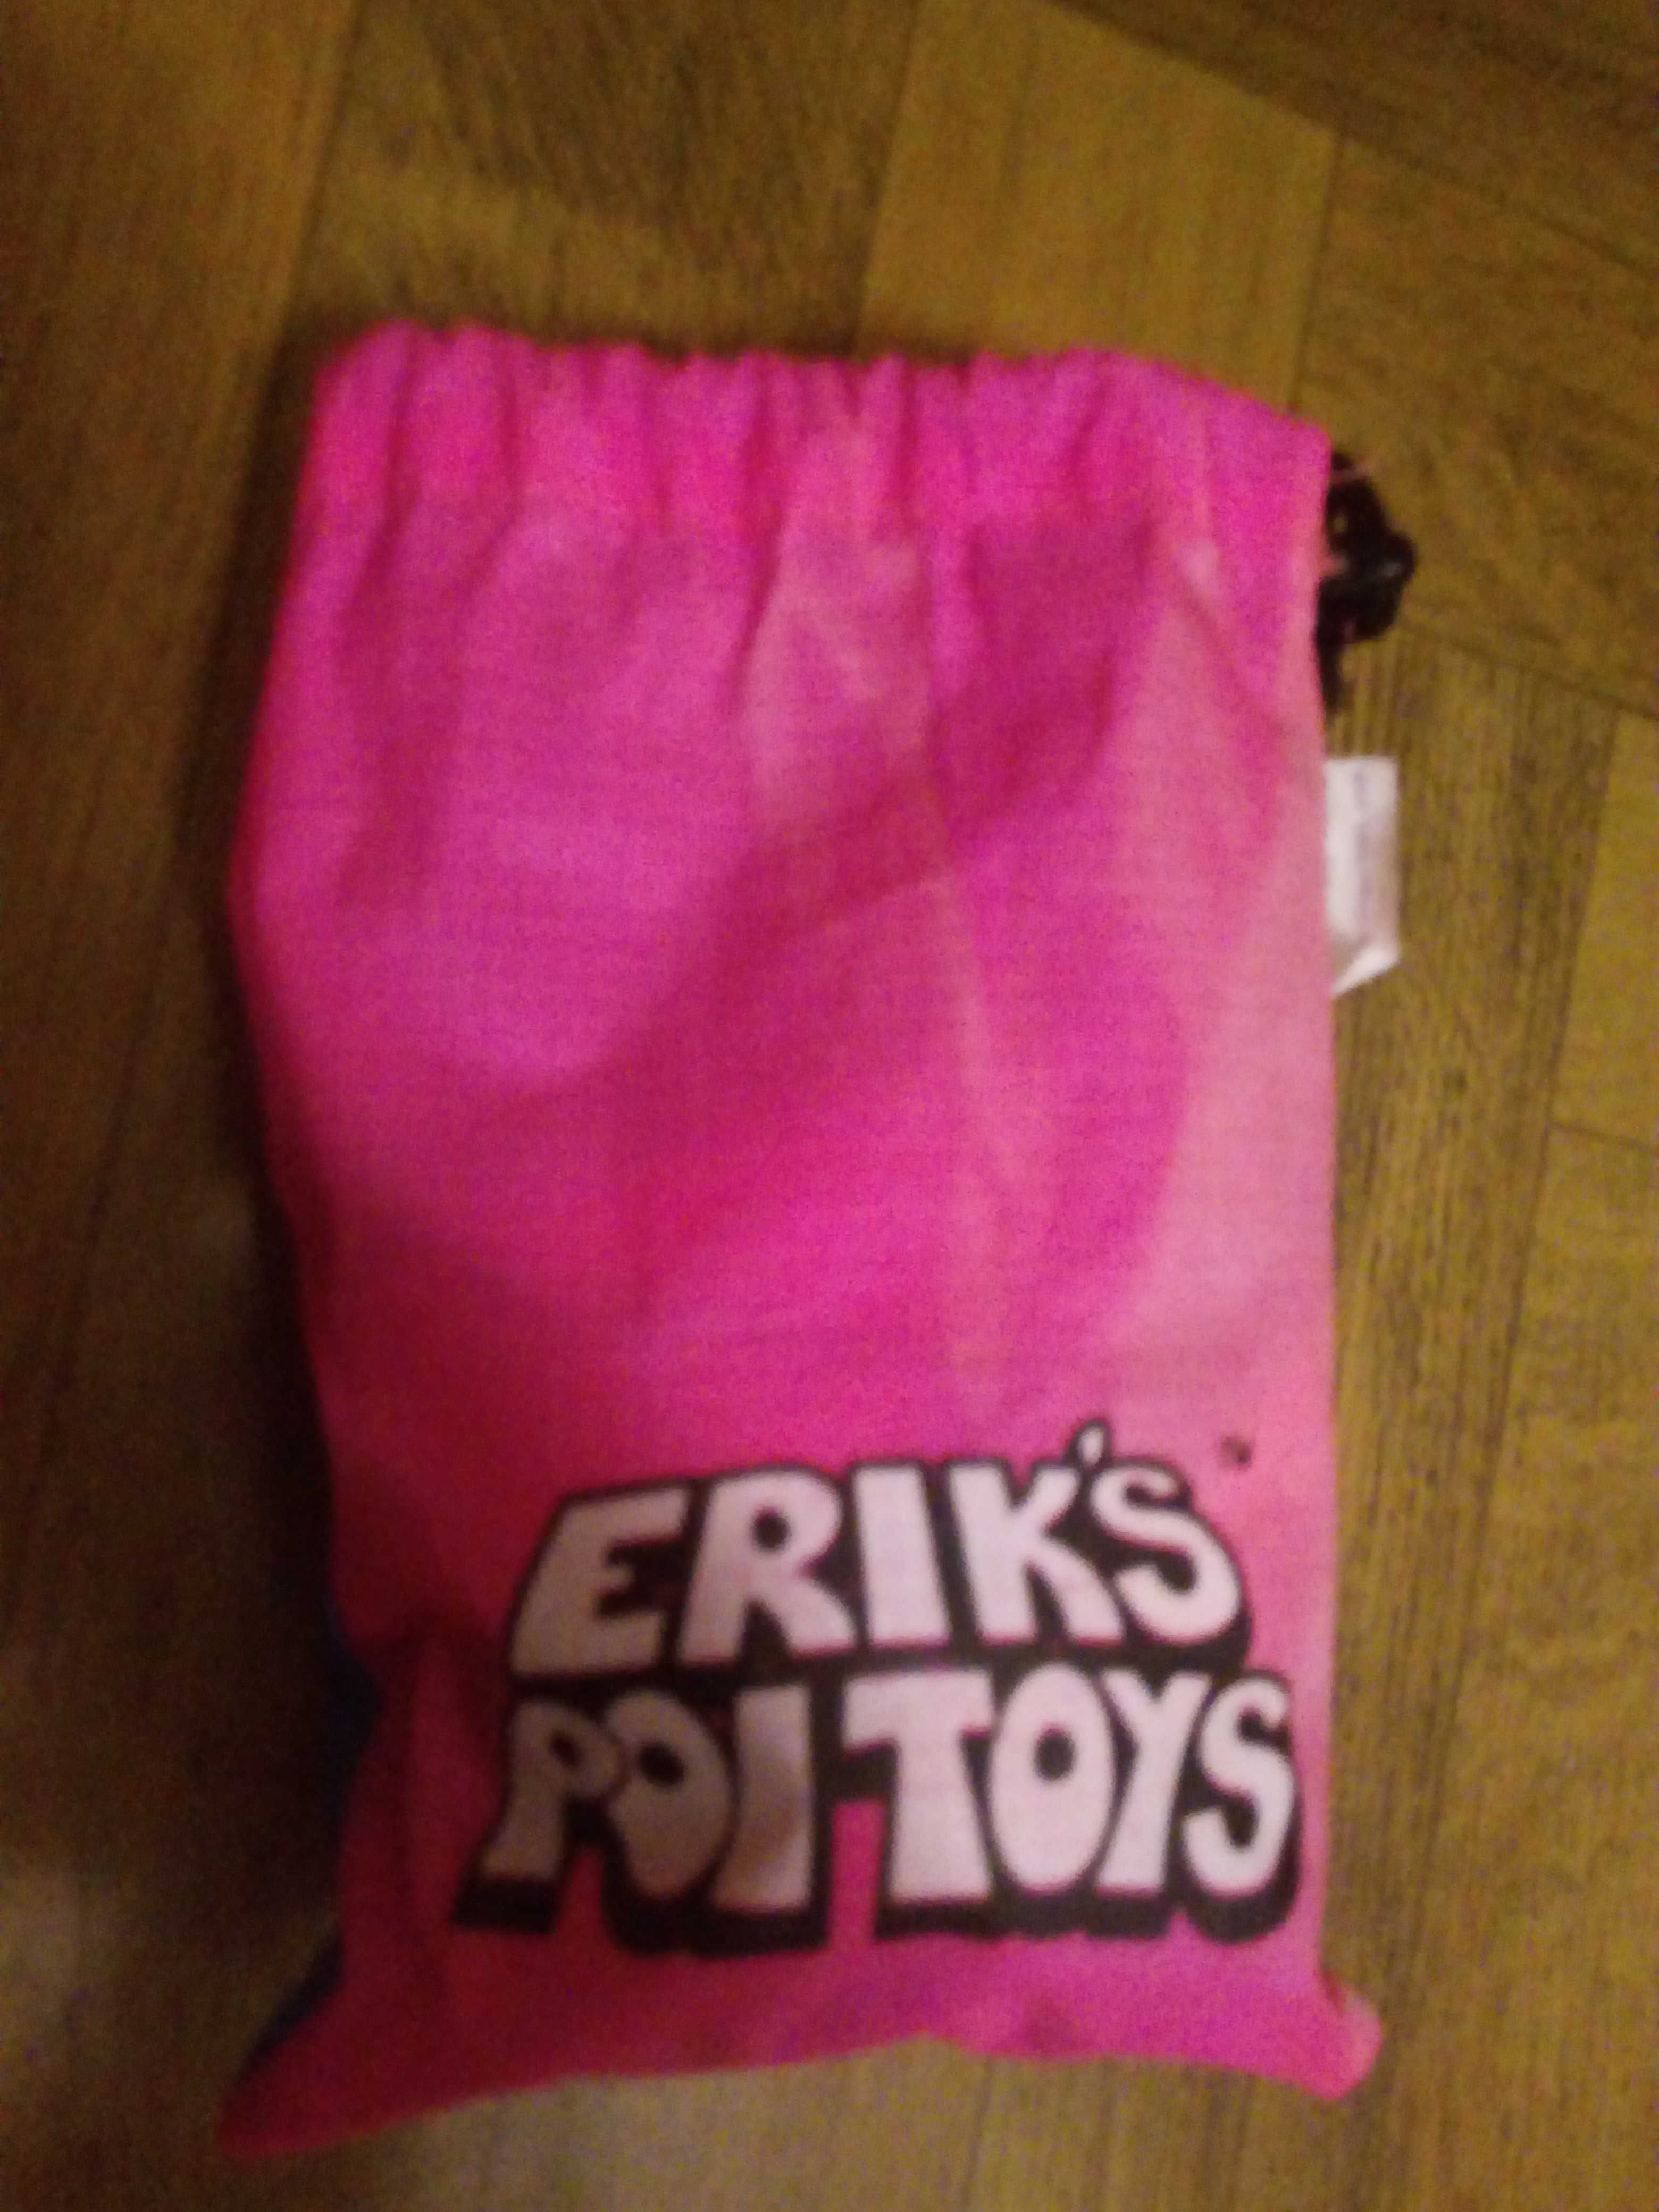 Erik"s poi toys - игрушка с лентами для жонглирования